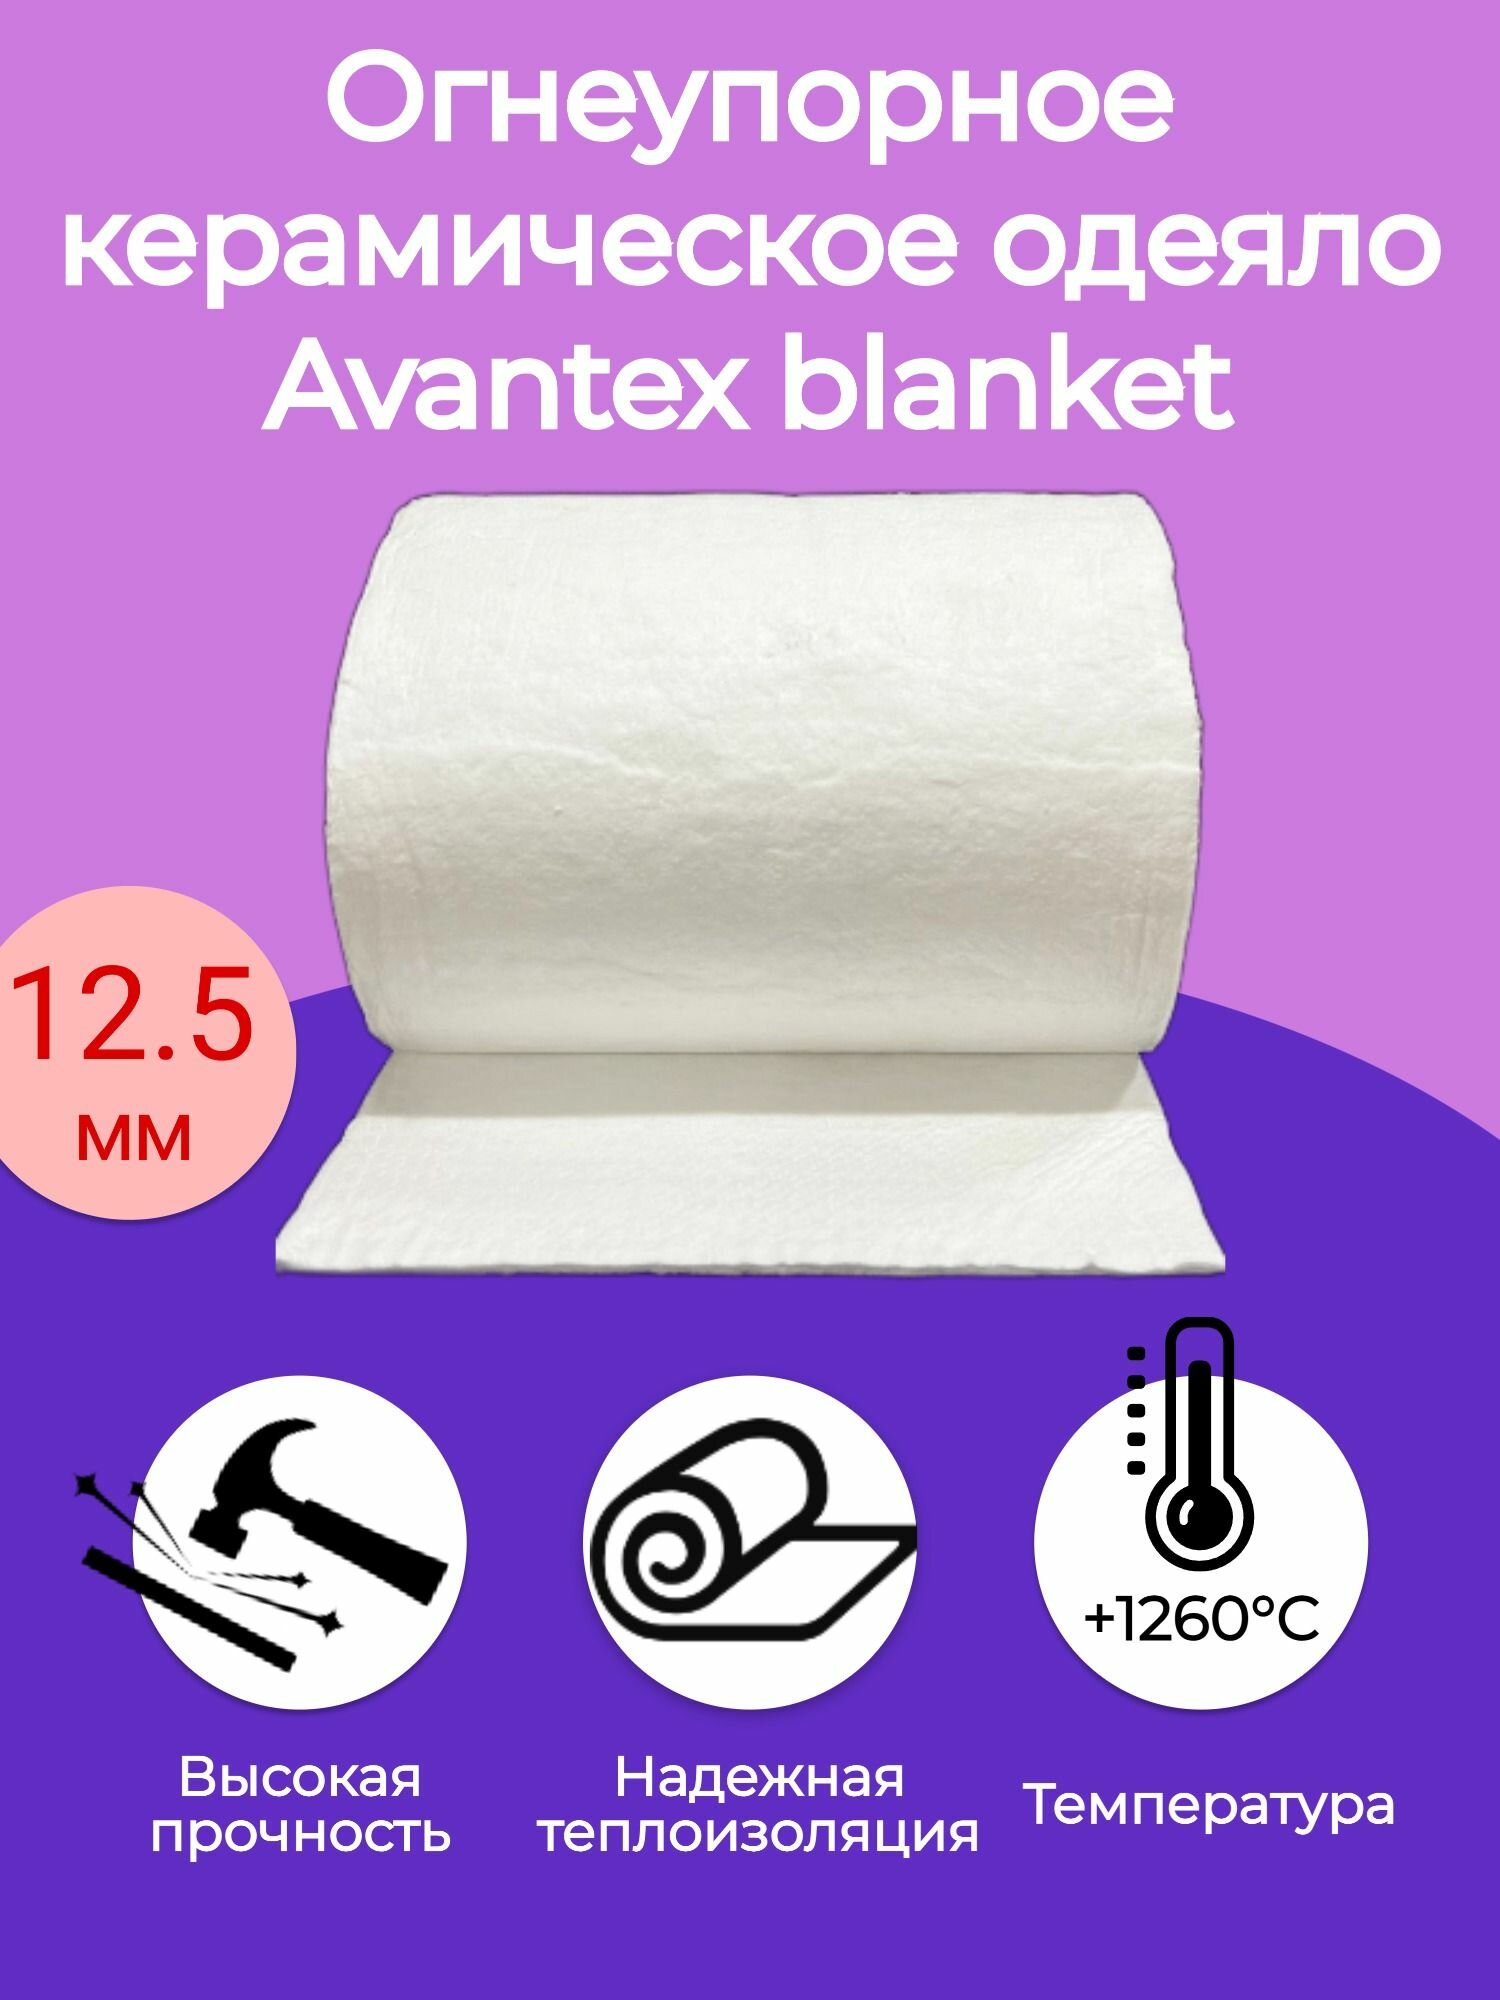 Огнеупорное керамическое одеяло. 3000х610х125мм. Плотность 128 кг/м3. Avantex blanket 1260 С